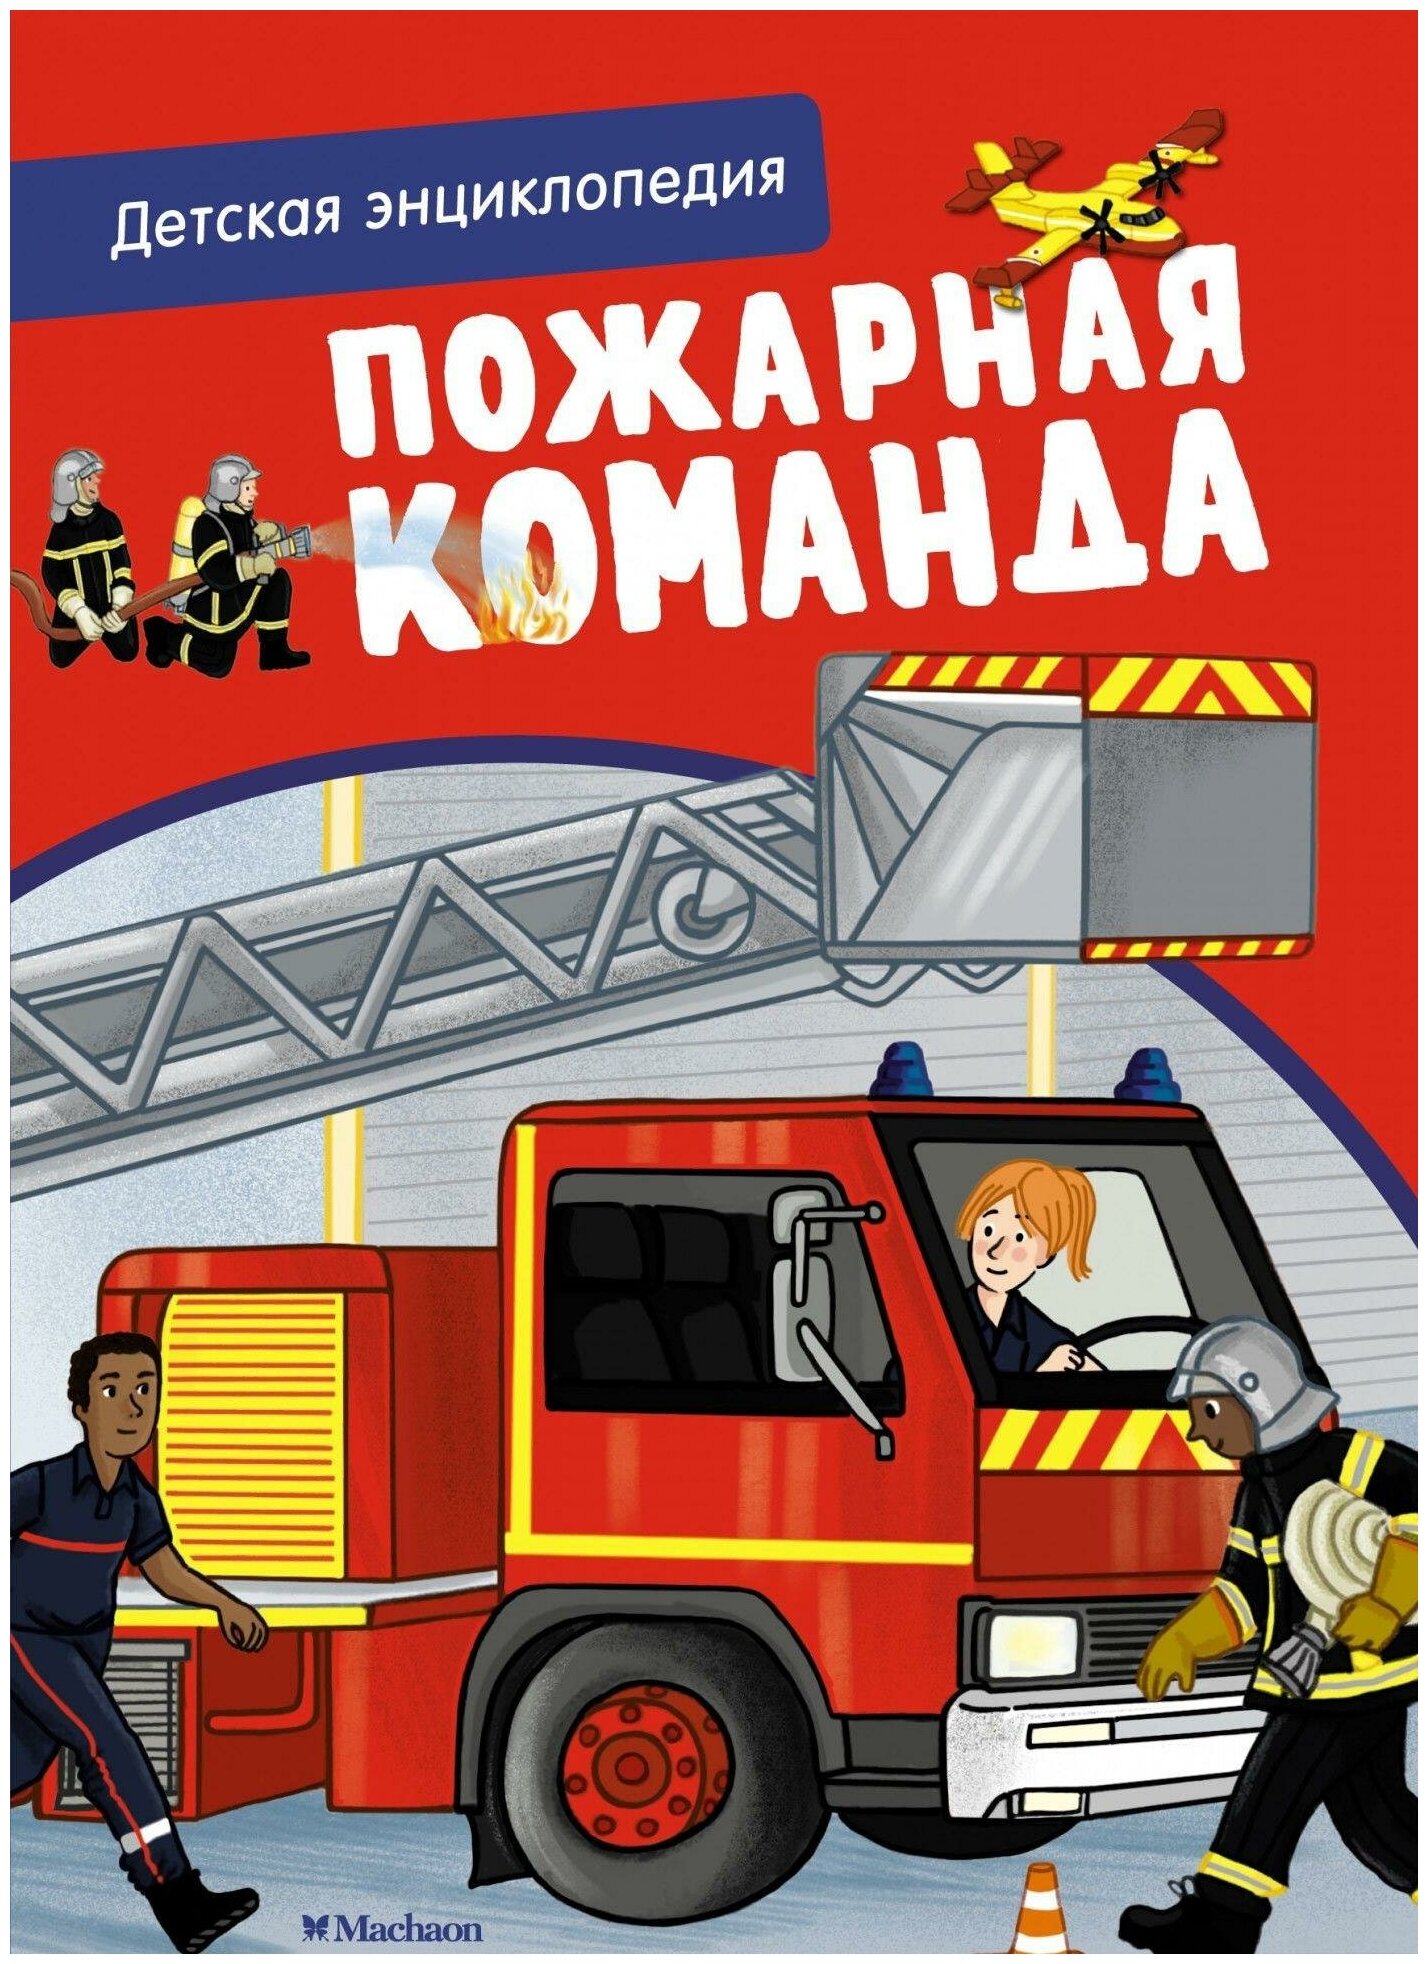 Блитман С. Пожарная команда. Детская энциклопедия. Хорошая книжка для любопытных детей